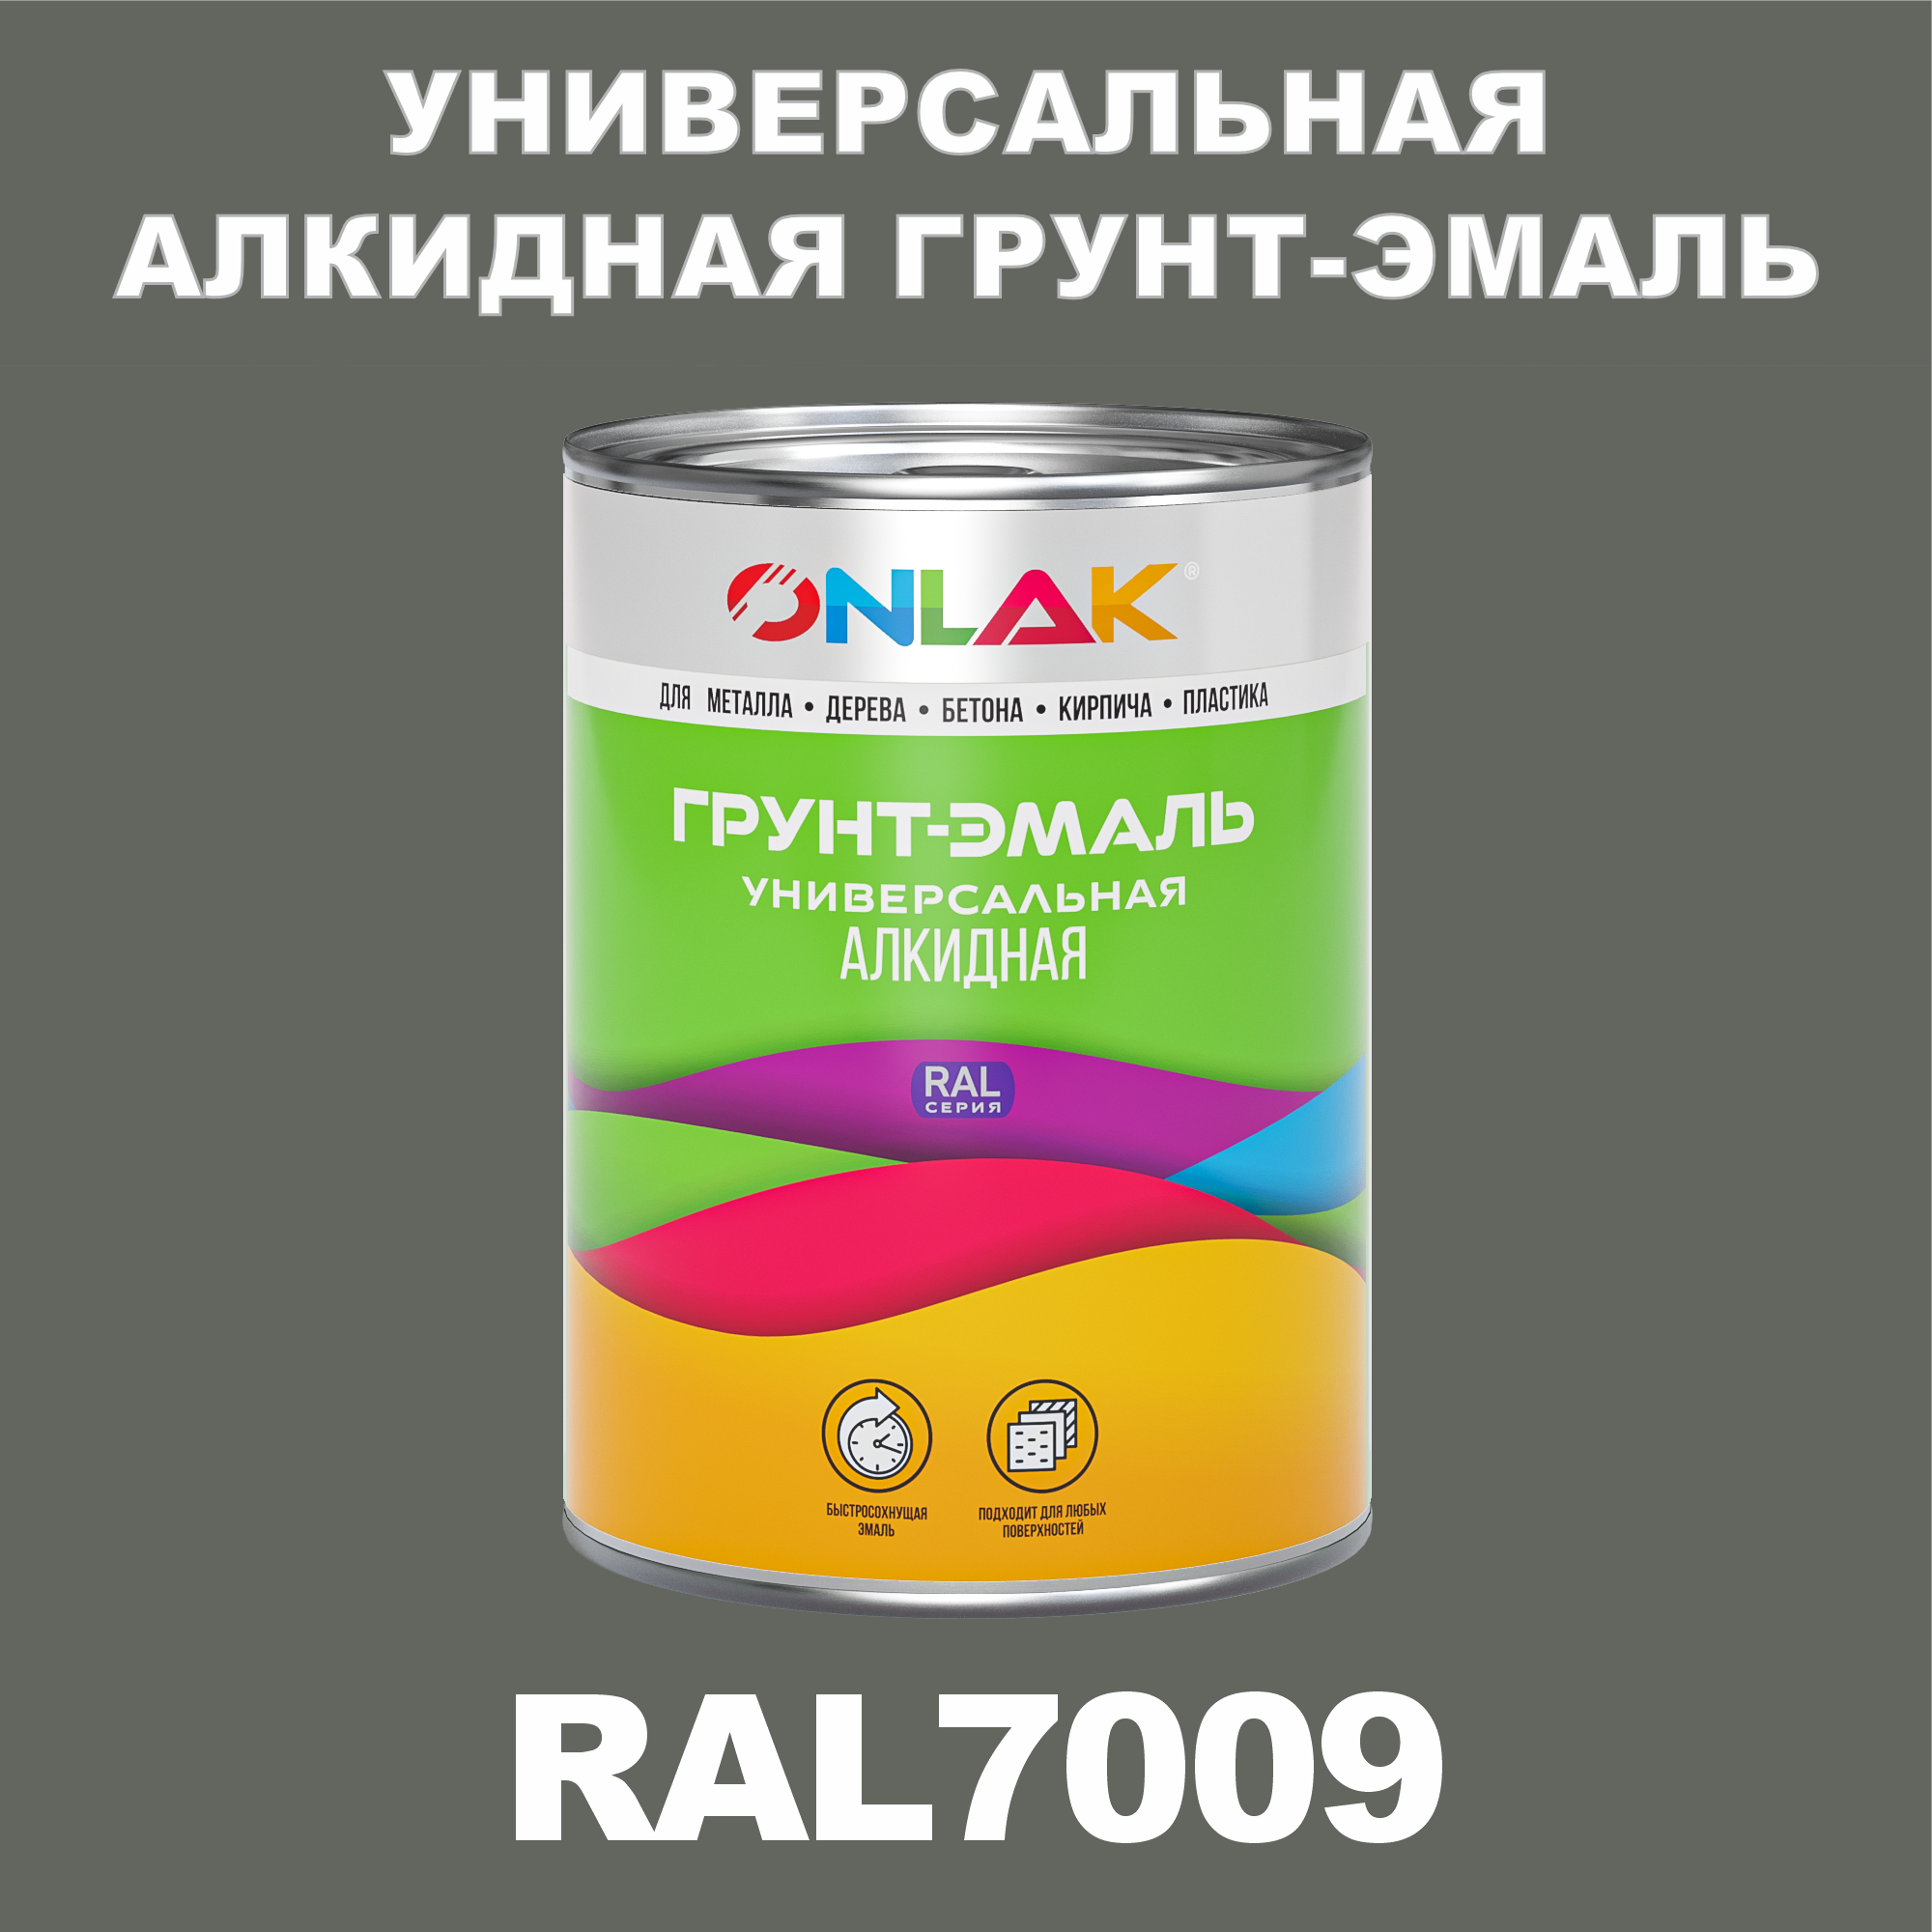 Грунт-эмаль ONLAK 1К RAL7009 антикоррозионная алкидная по металлу по ржавчине 1 кг специальная антикоррозионная грунт эмаль certa